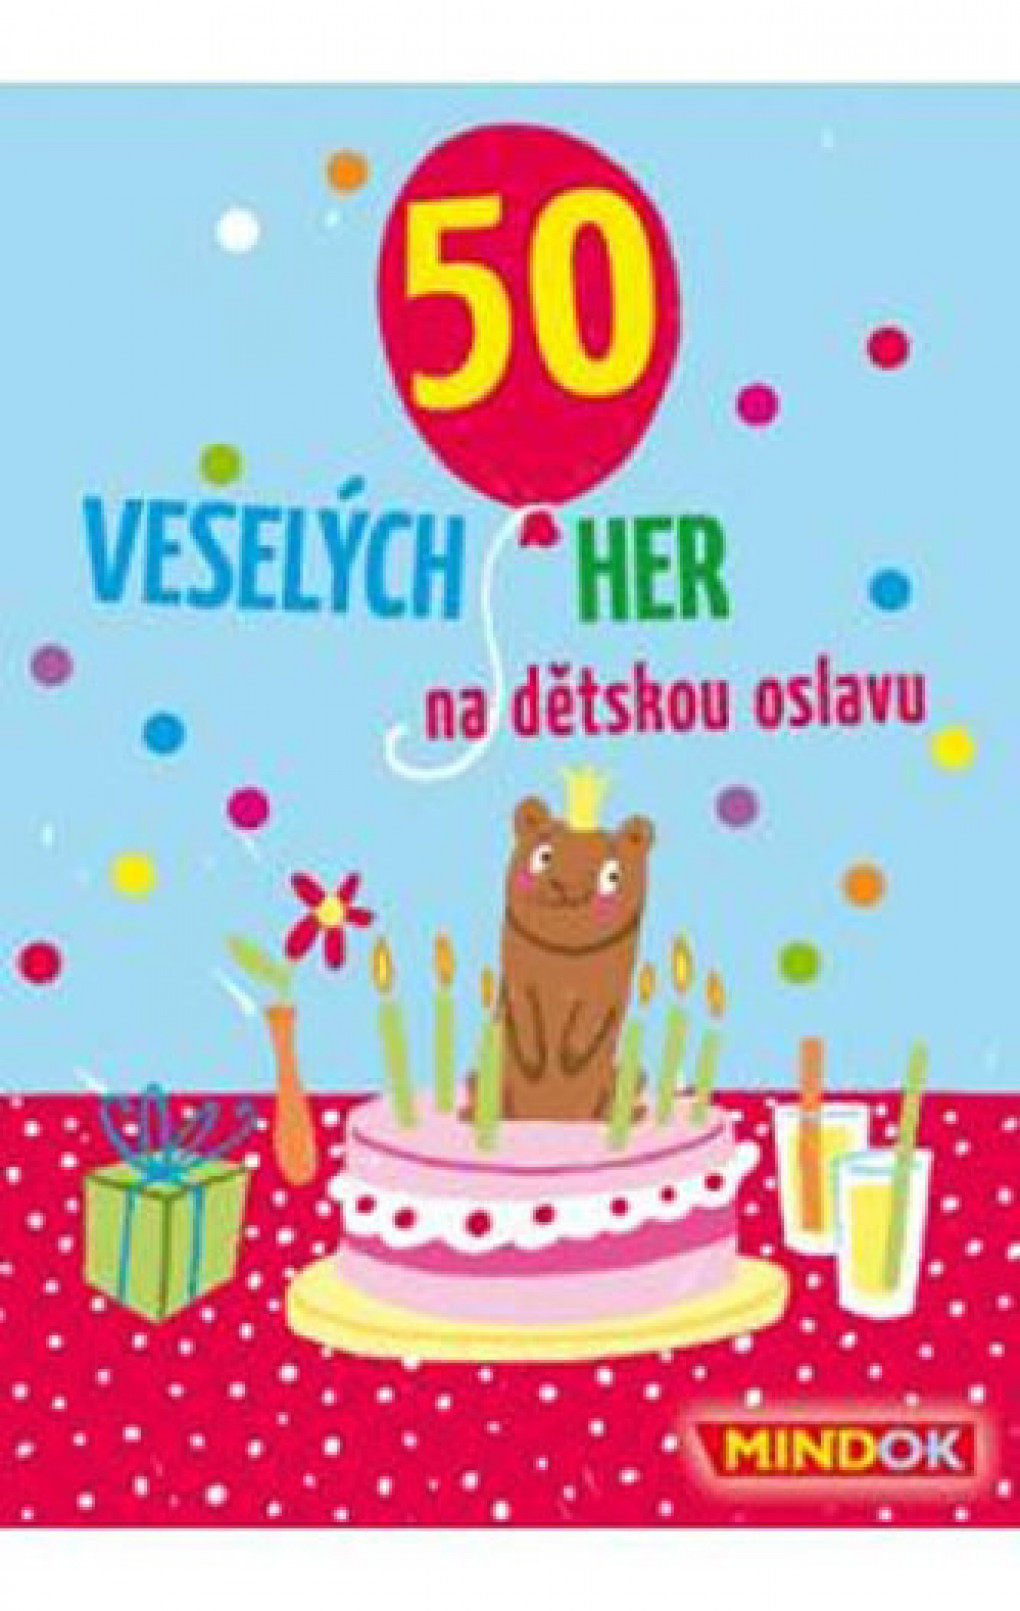 50_veselych_her_na_detskou_oslavu.jpg